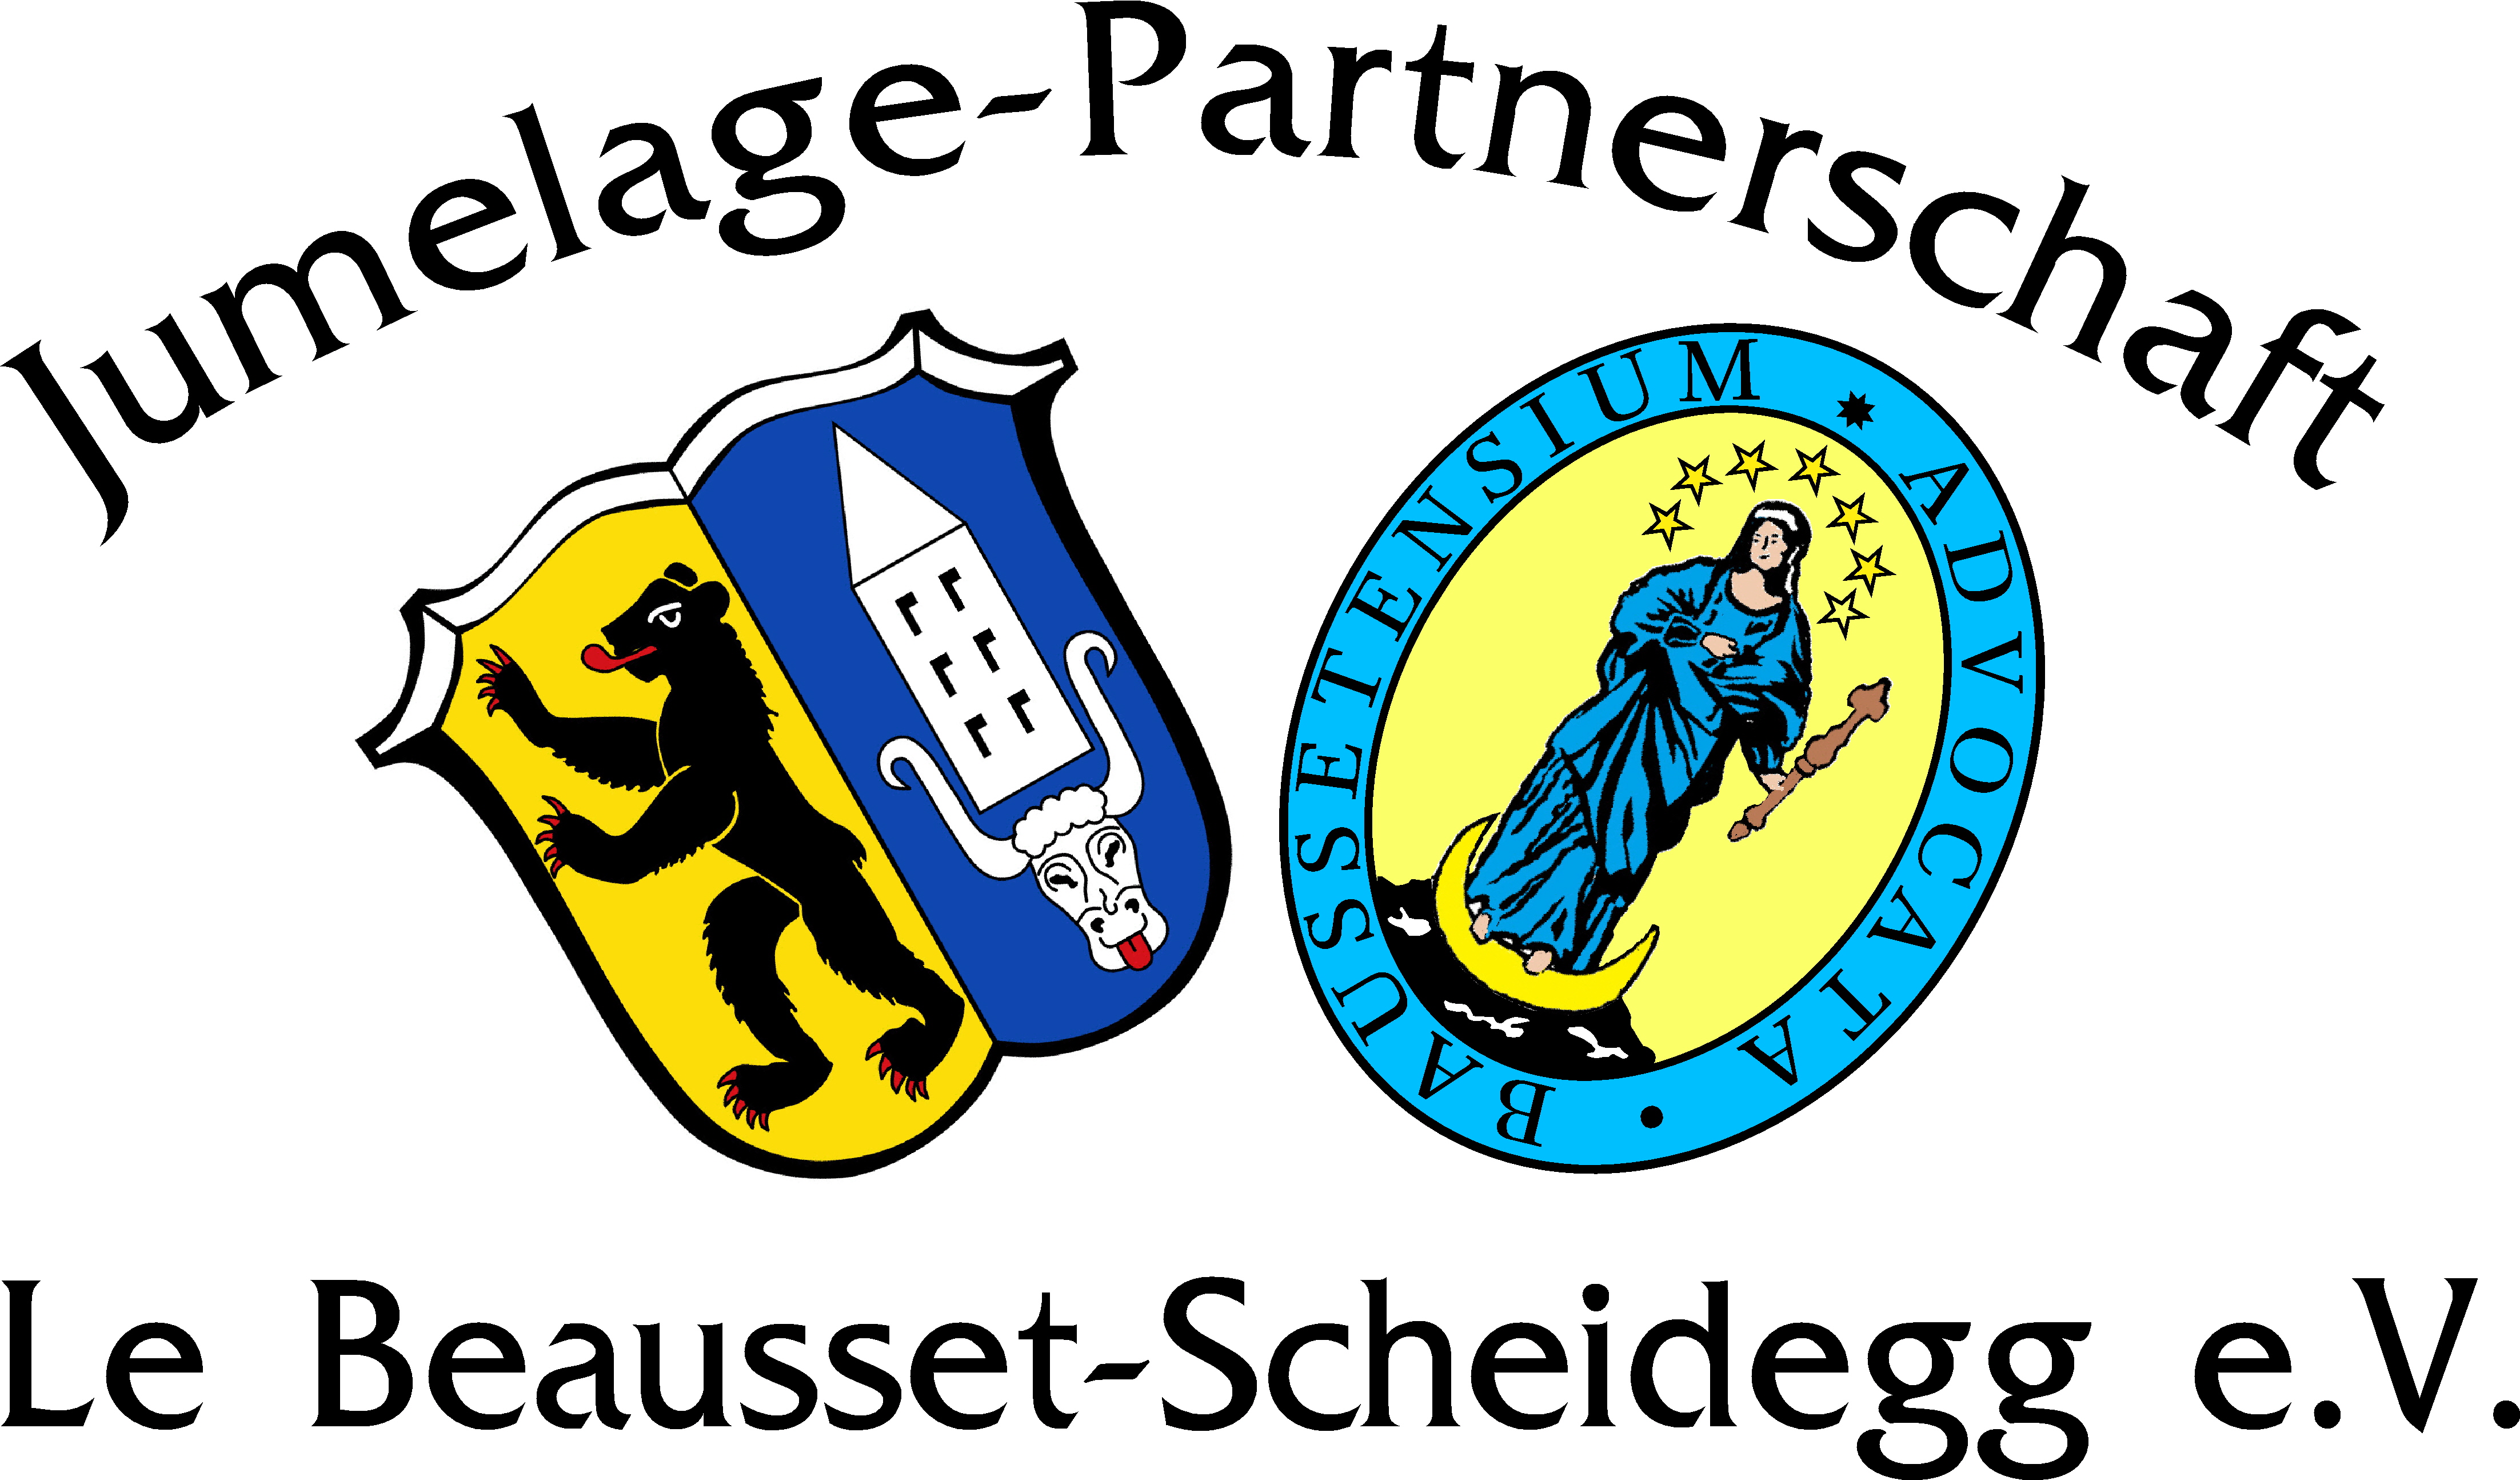 Jumelage-Partnerschaft Le Beausset-Scheidegg e.V.